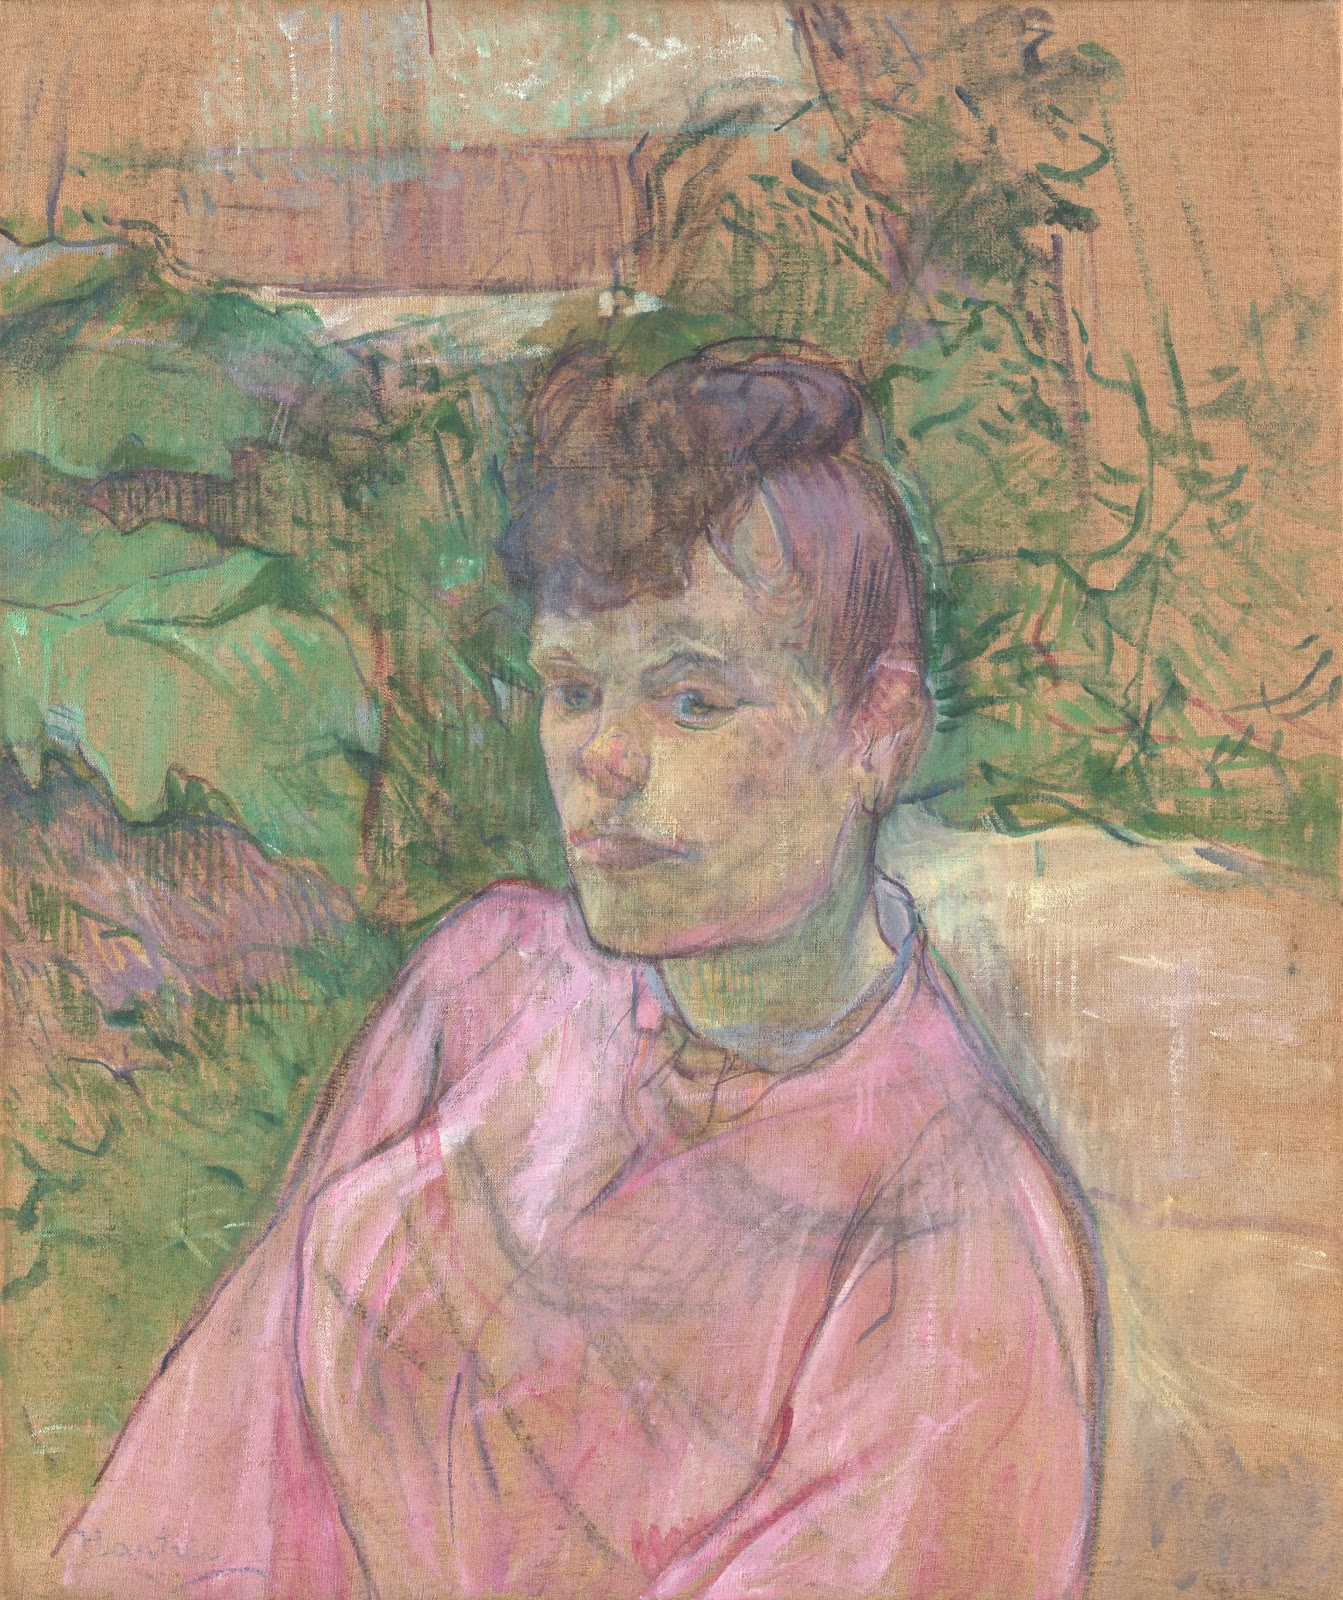 Henri+de+Toulouse+Lautrec-1864-1901 (149).jpg